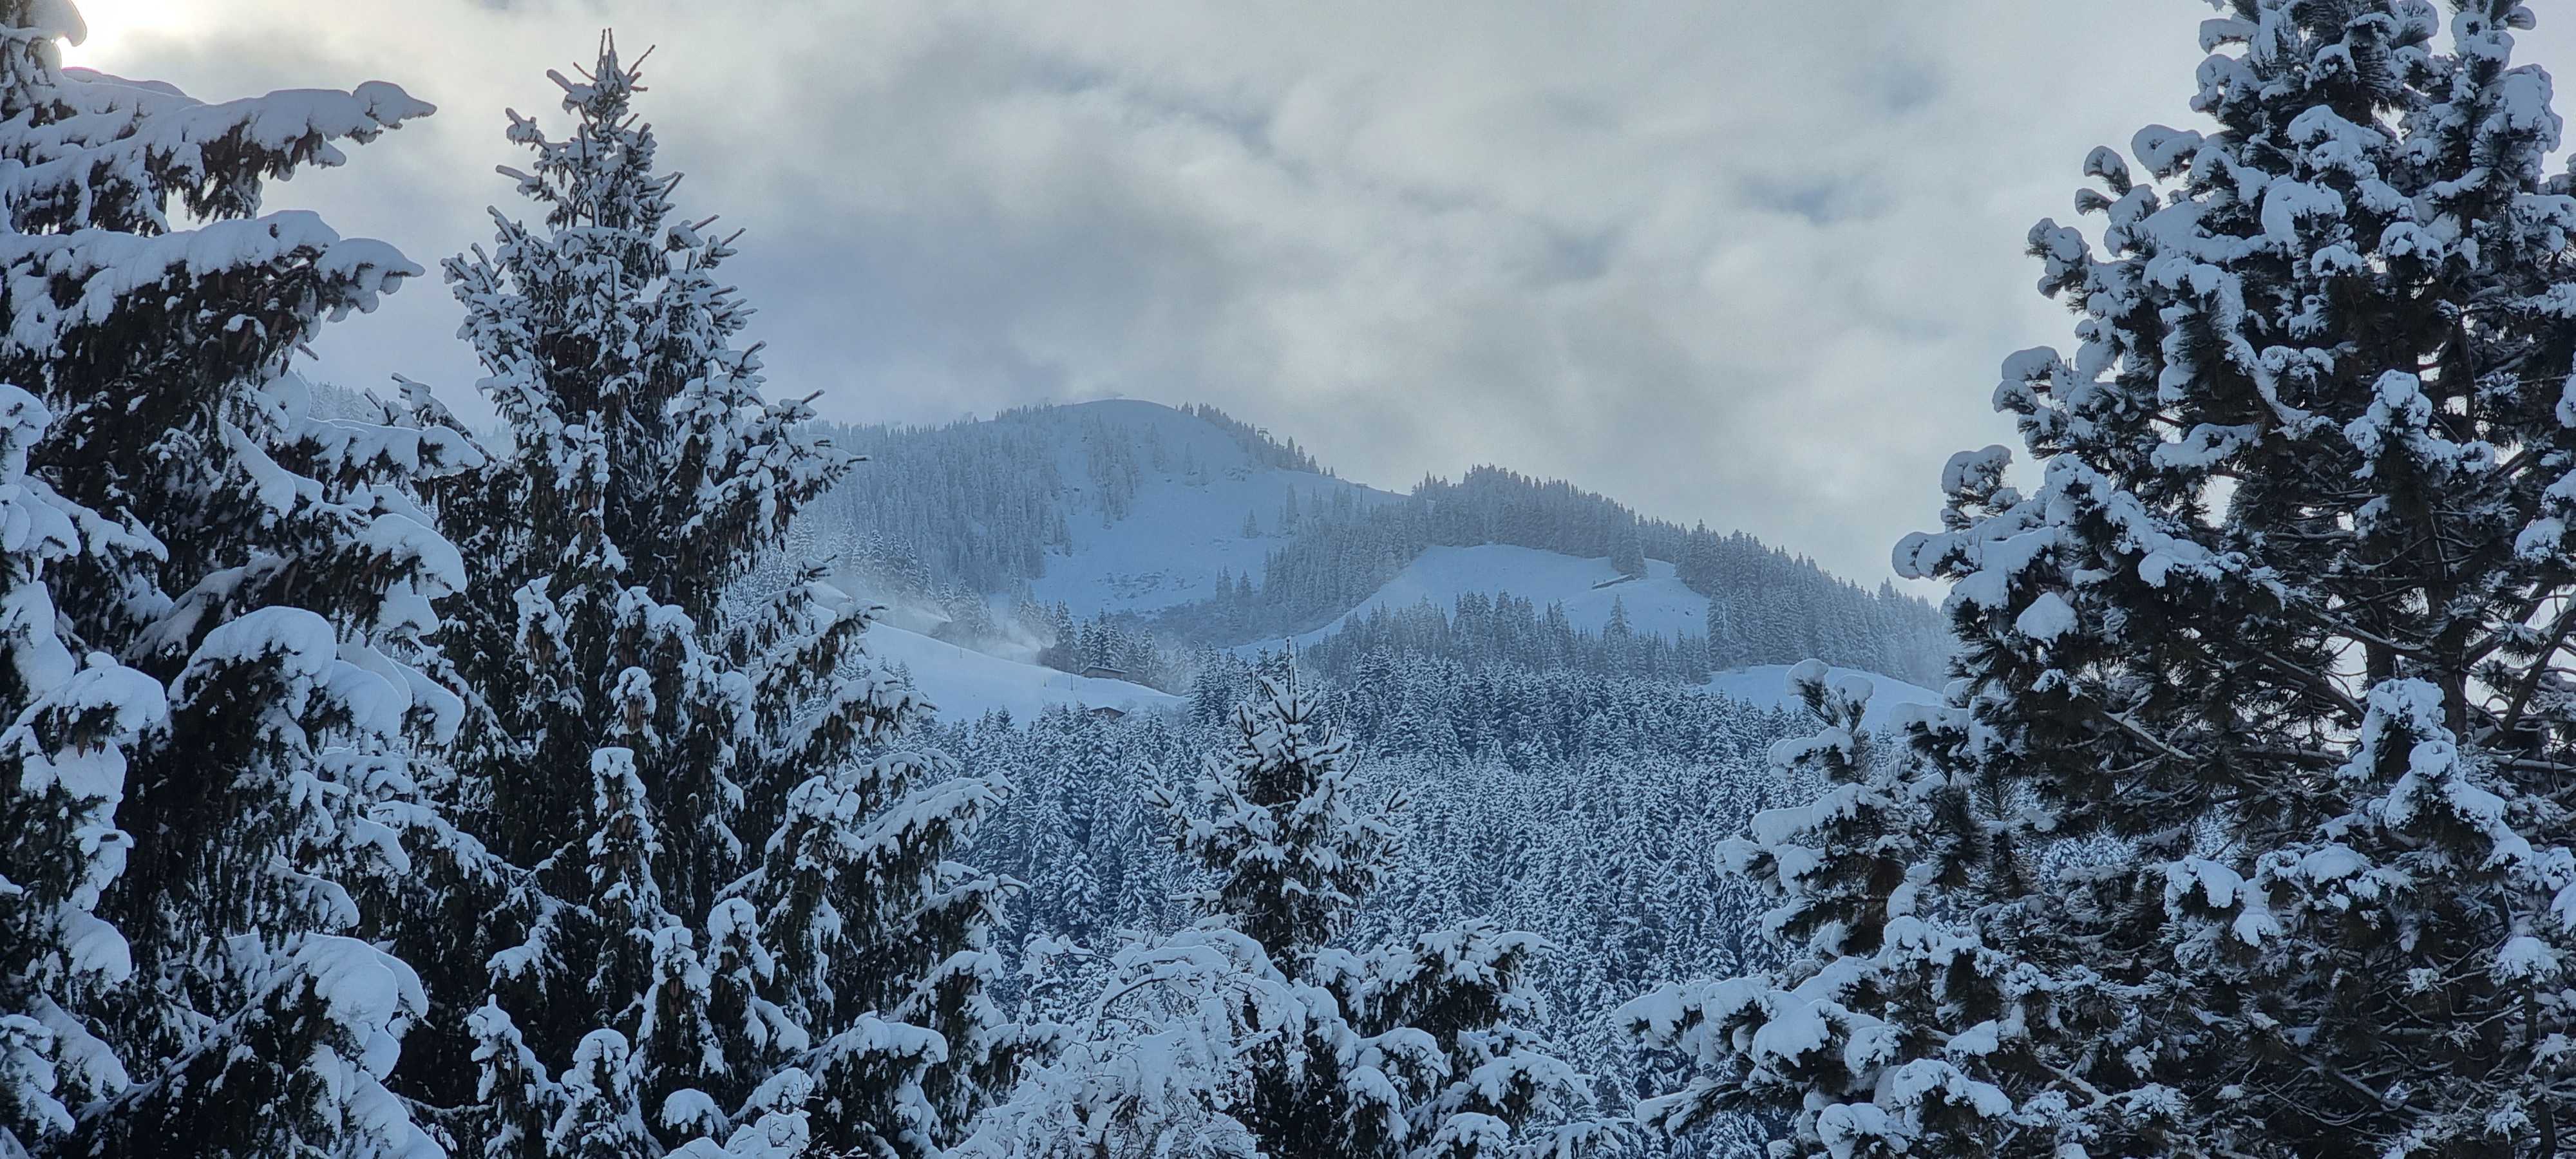 Mooie verse laag sneeuw op de bomen in de Alpen